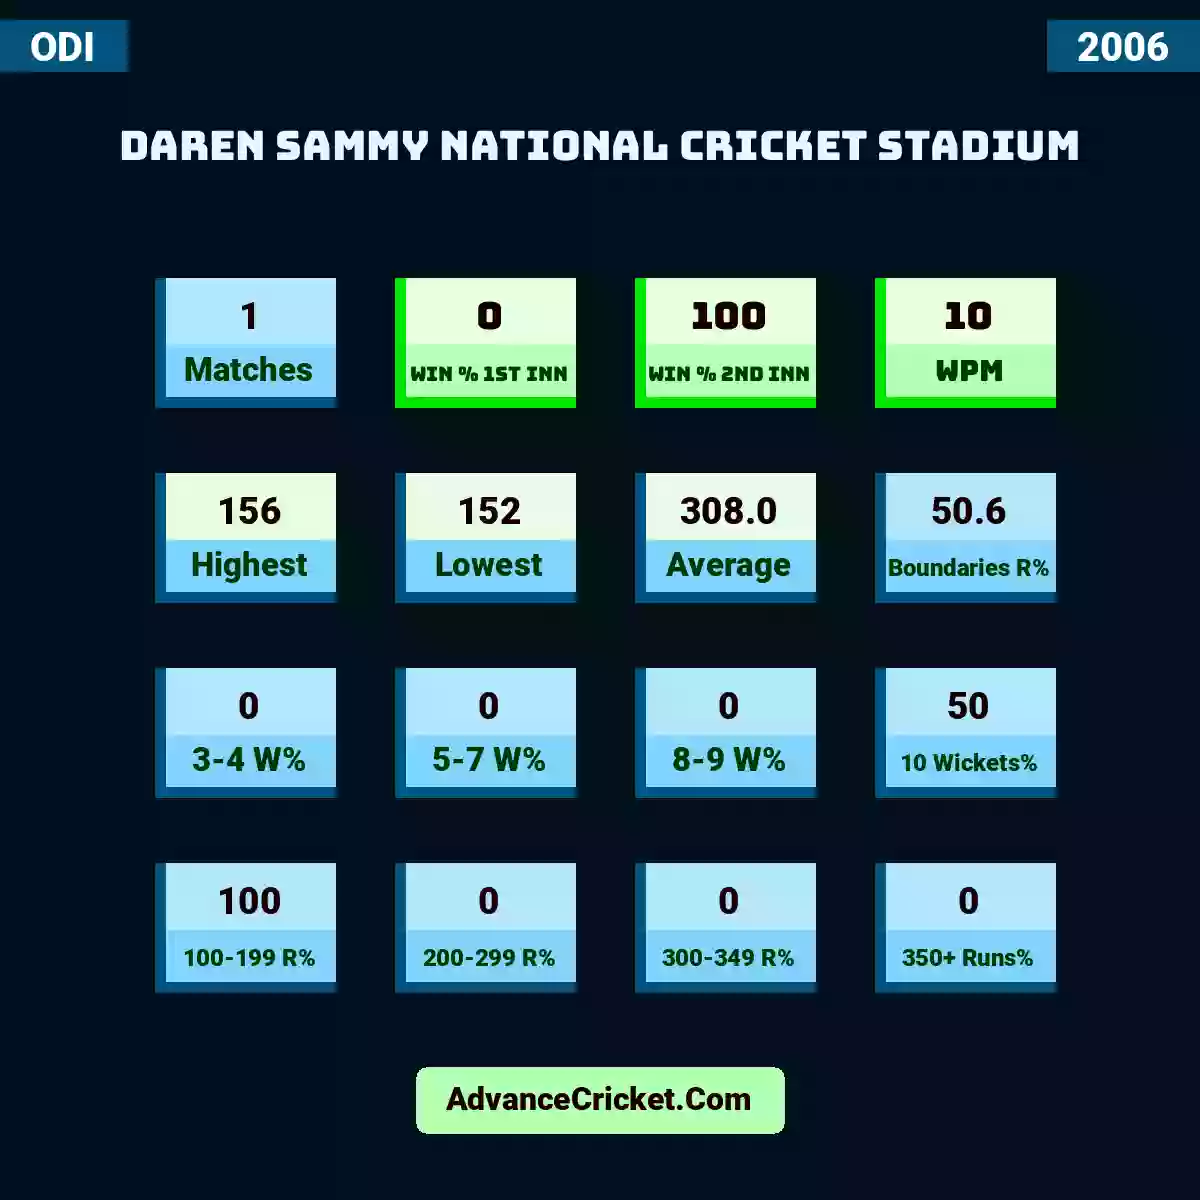 Image showing Daren Sammy National Cricket Stadium with Matches: 1, Win % 1st Inn: 0, Win % 2nd Inn: 100, WPM: 10, Highest: 156, Lowest: 152, Average: 308.0, Boundaries R%: 50.6, 3-4 W%: 0, 5-7 W%: 0, 8-9 W%: 0, 10 Wickets%: 50, 100-199 R%: 100, 200-299 R%: 0, 300-349 R%: 0, 350+ Runs%: 0.